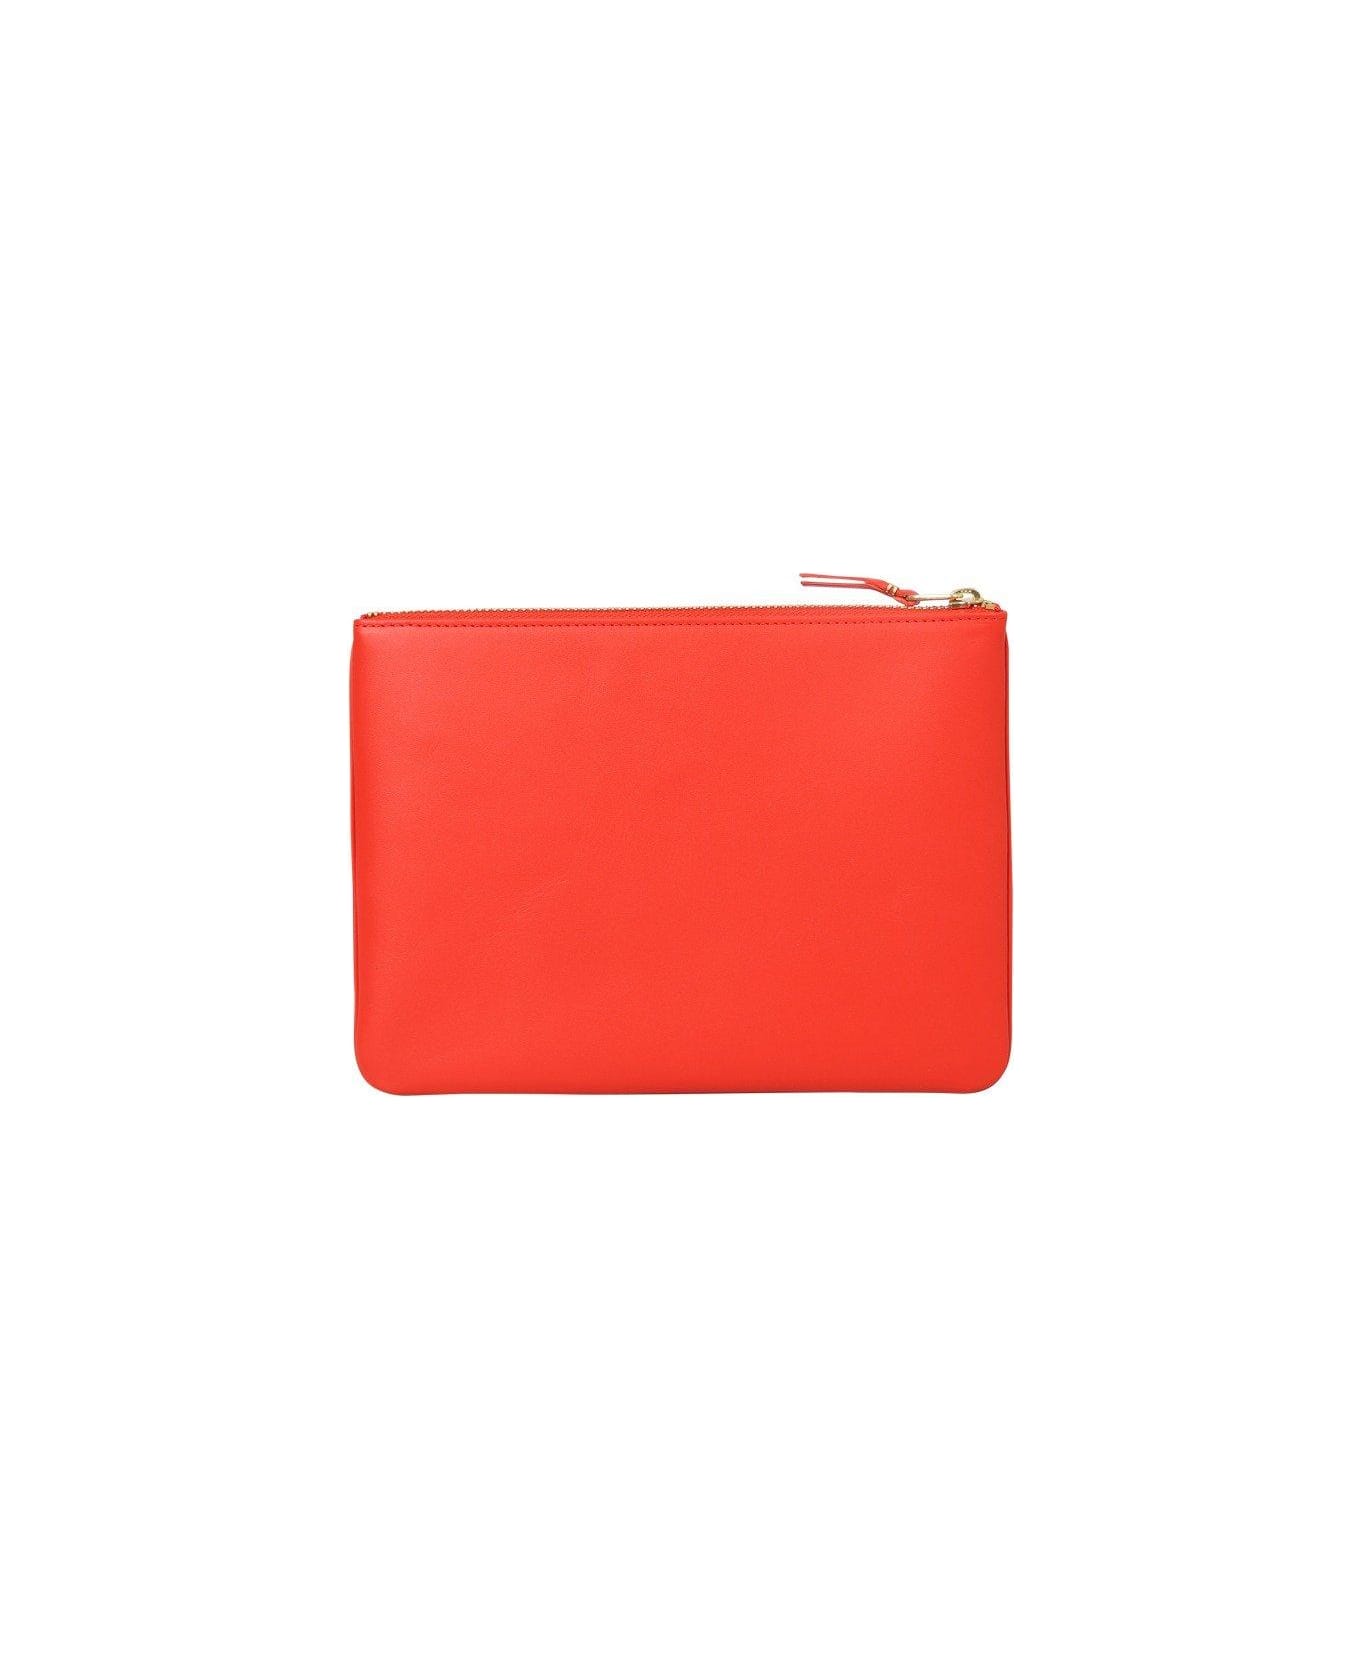 Comme des Garçons Wallet Logo Detailed Classic Wallet - Oran Orange 財布